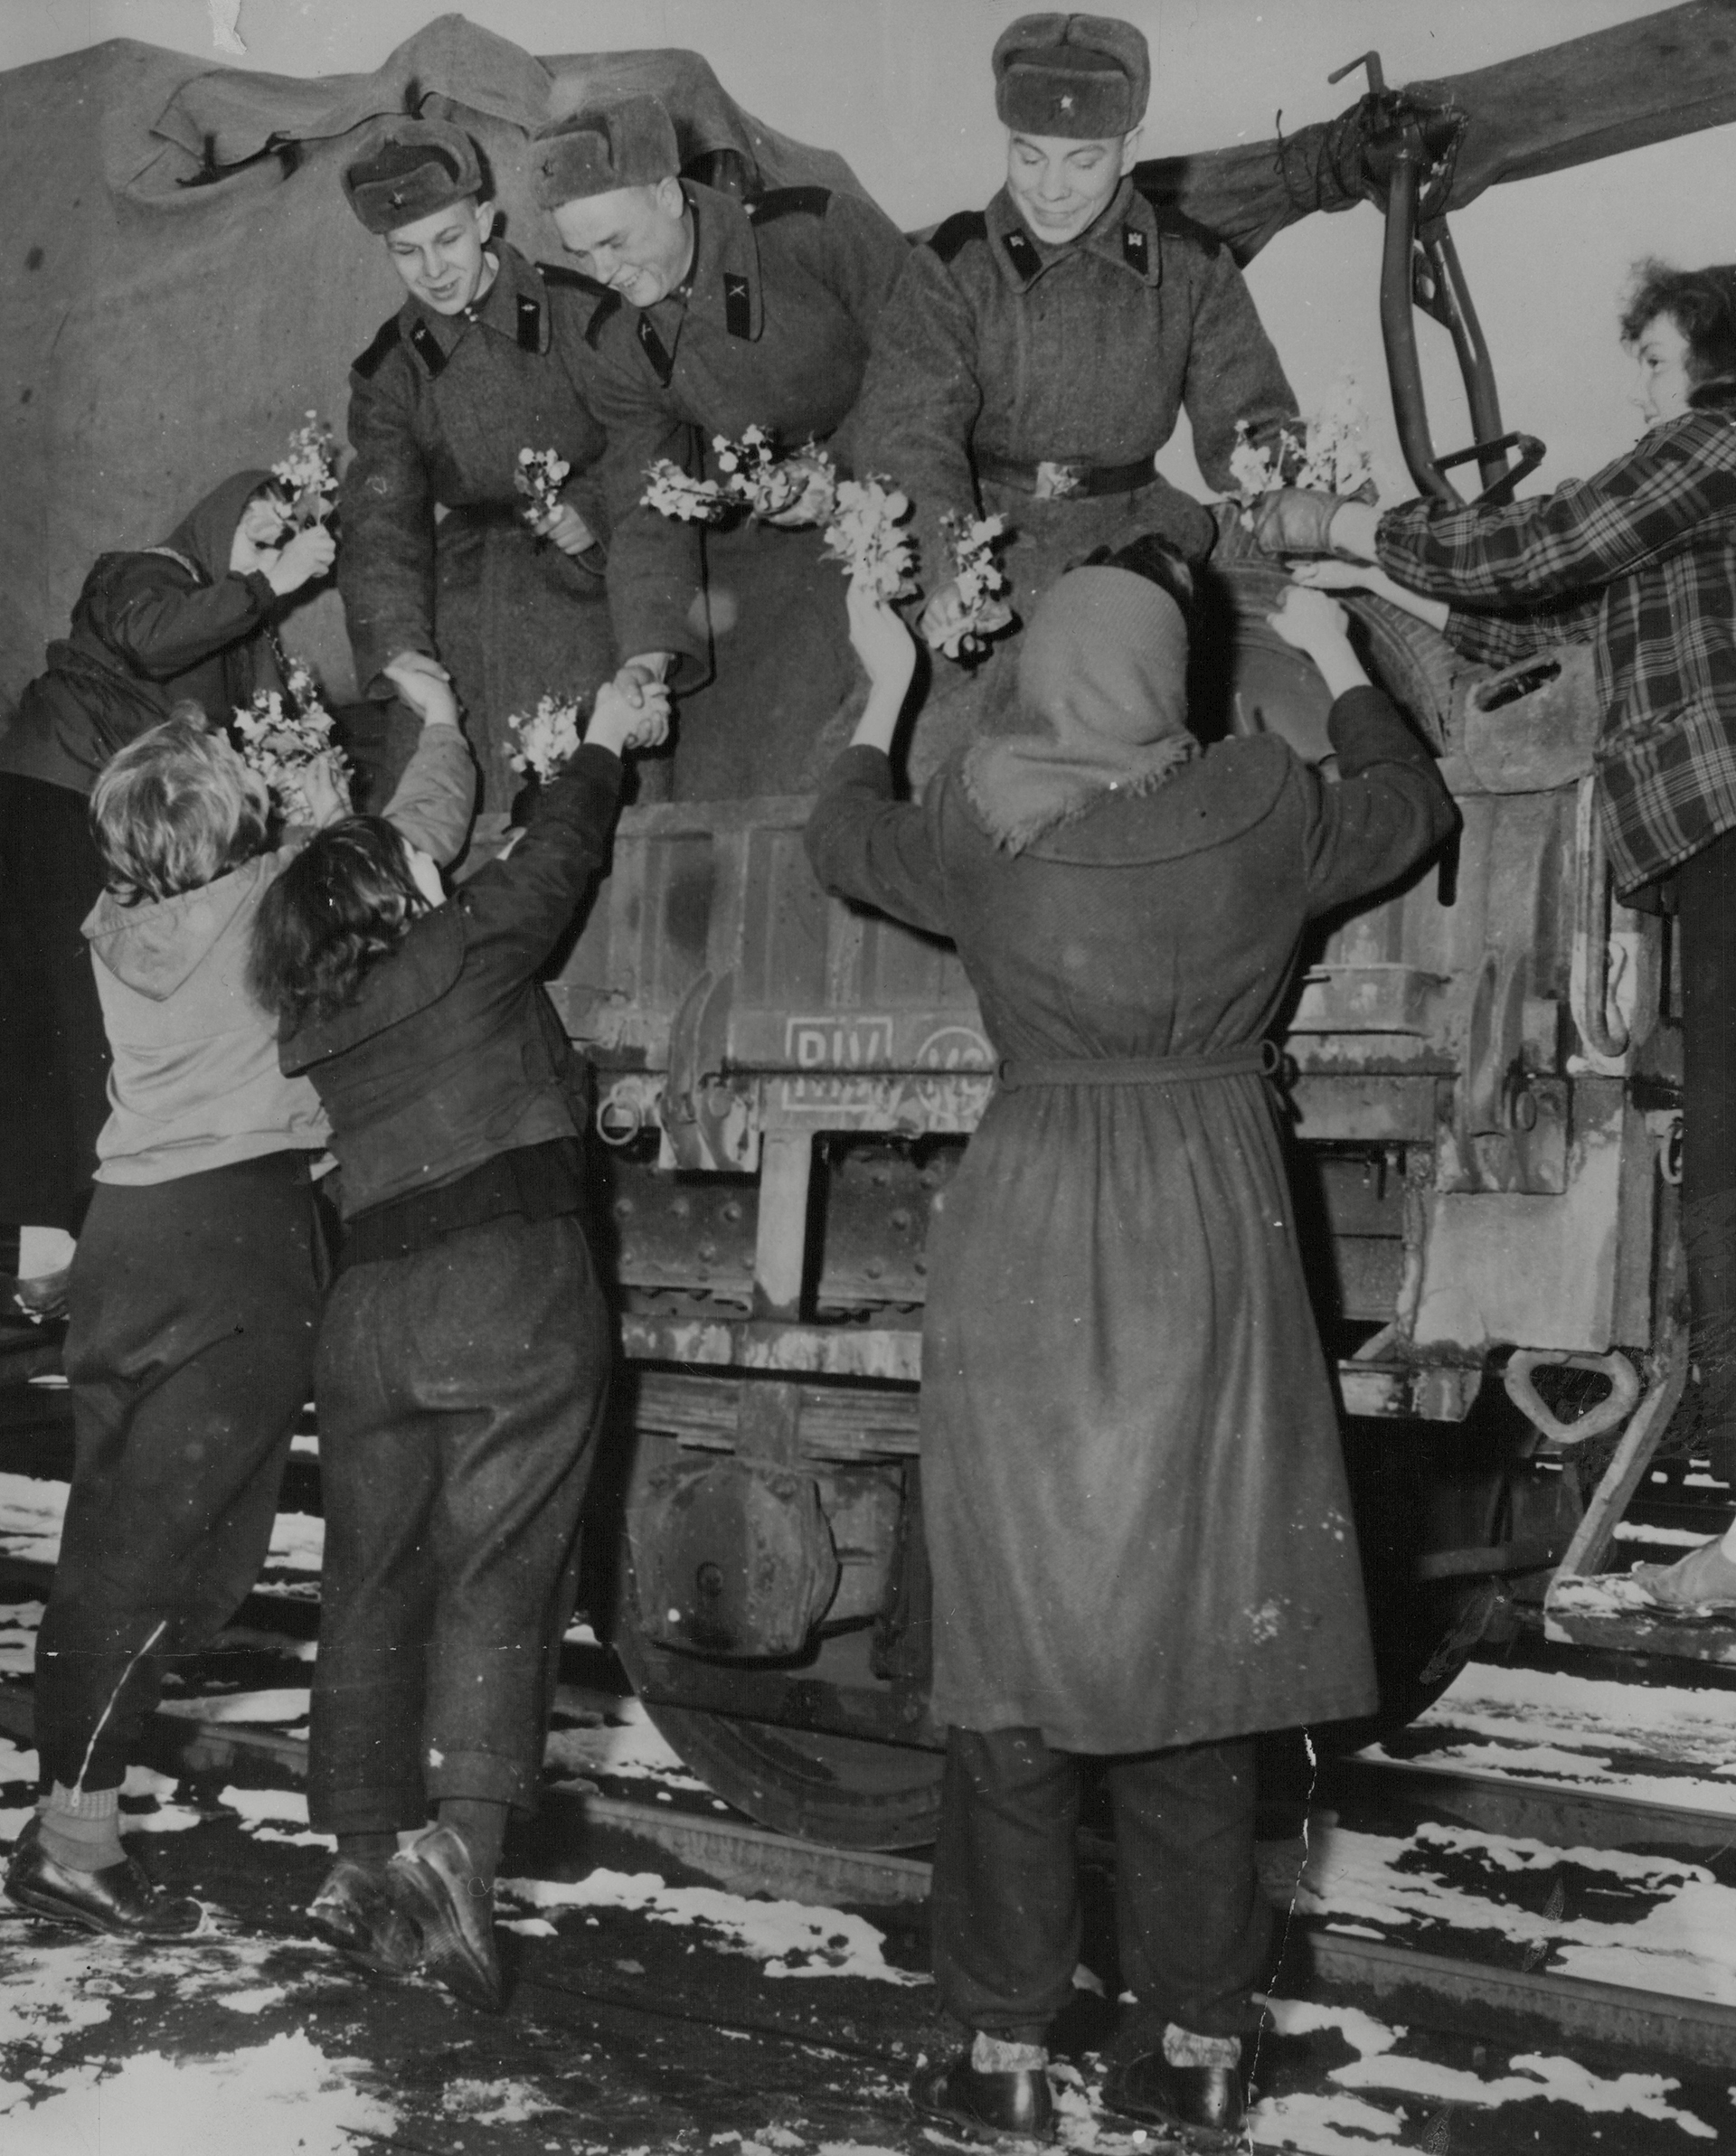 Europa 1945, los dramas después de la Segunda Guerra: violaciones,  venganzas, los sobrevivientes de los campos y mucho dolor - Infobae